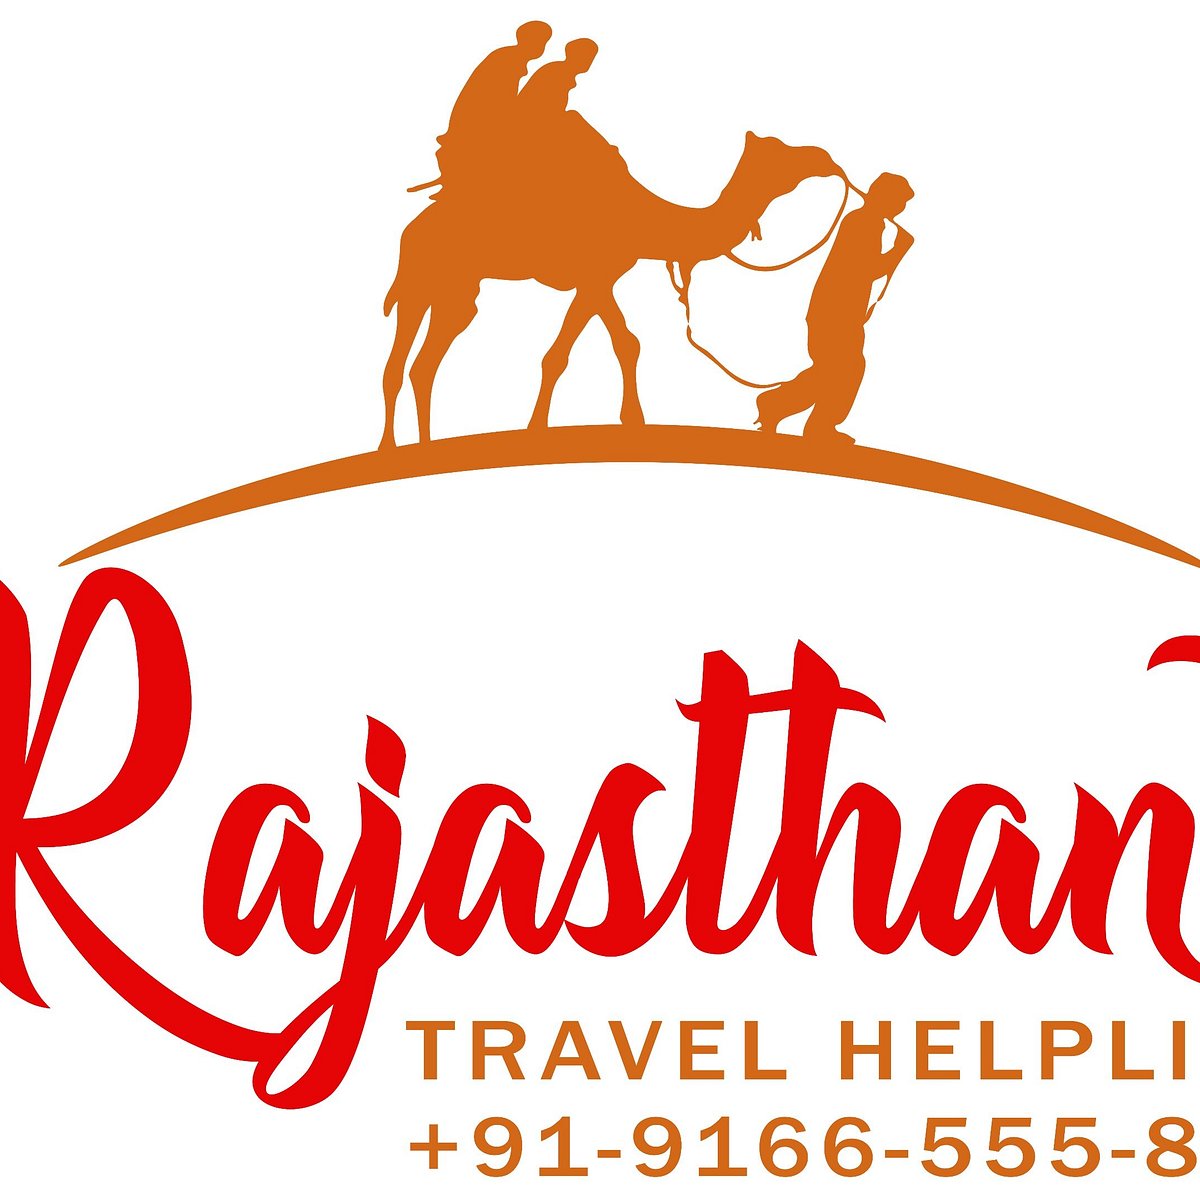 rajasthan travel helpline